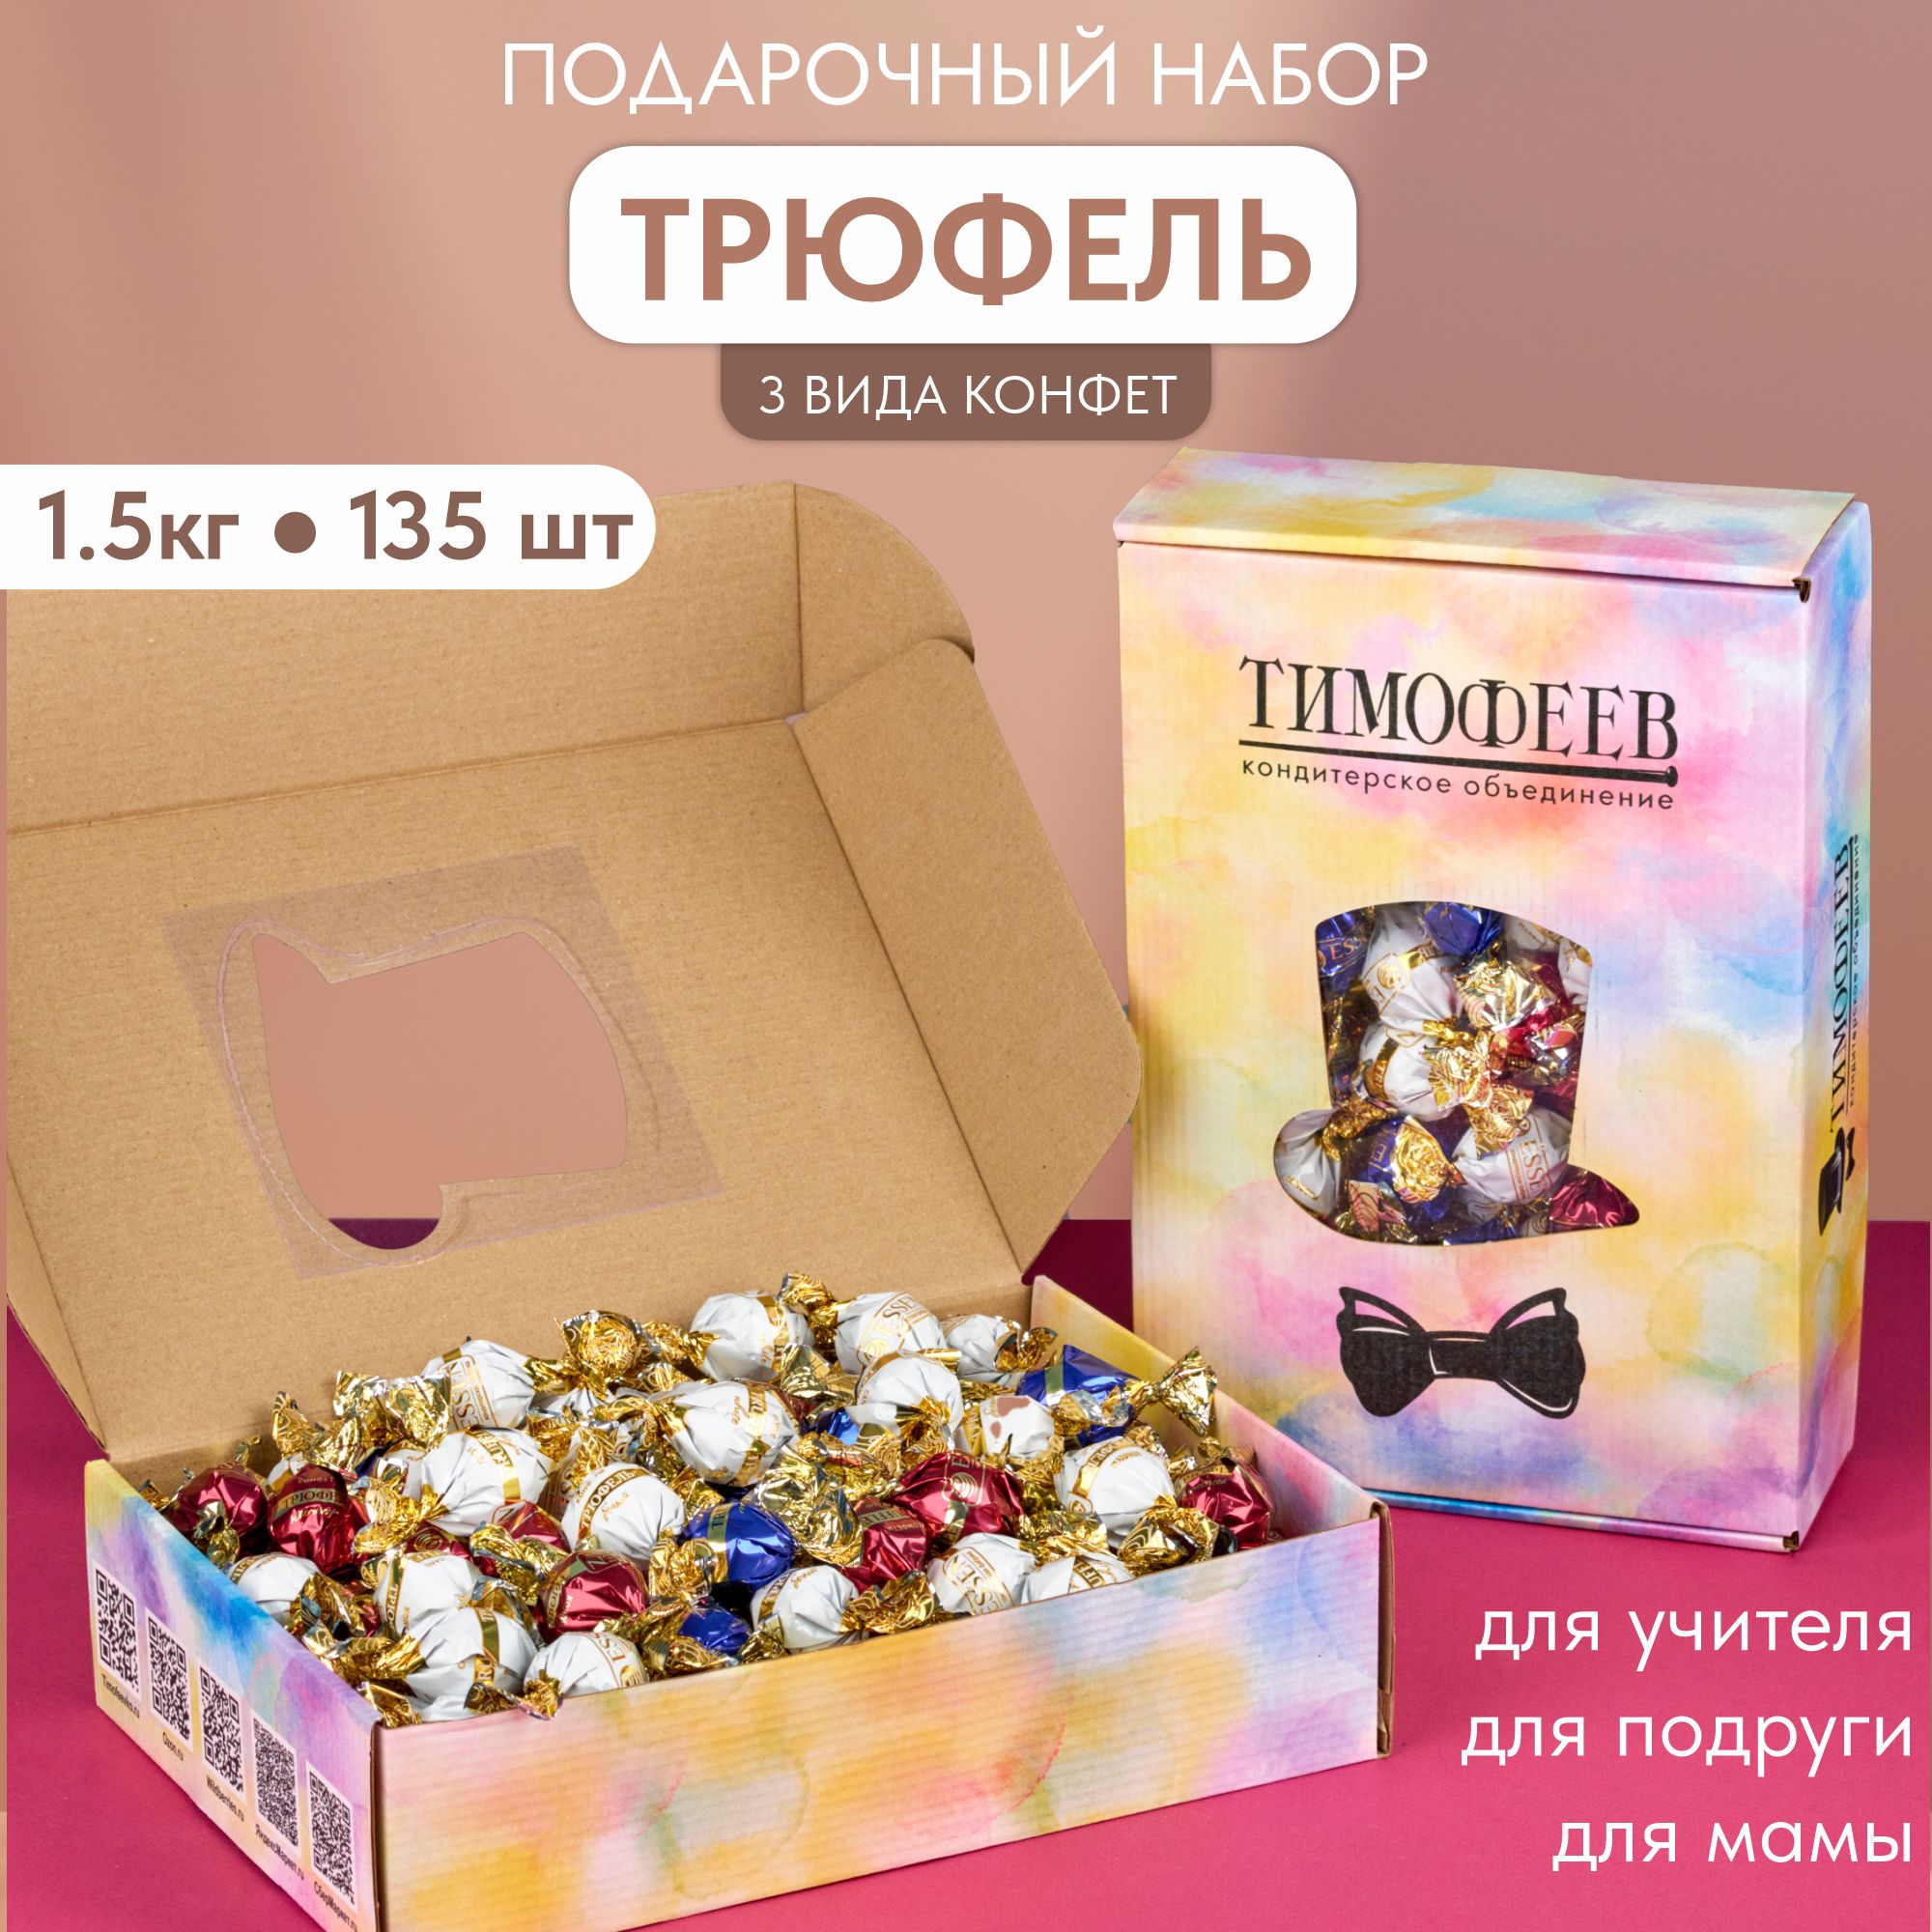 Трюфельассорти.Подарочныйнаборшоколадныхконфетвкоробке,"TRUFFLE",ТимофеевКО,1,5кг,цветнойкороб